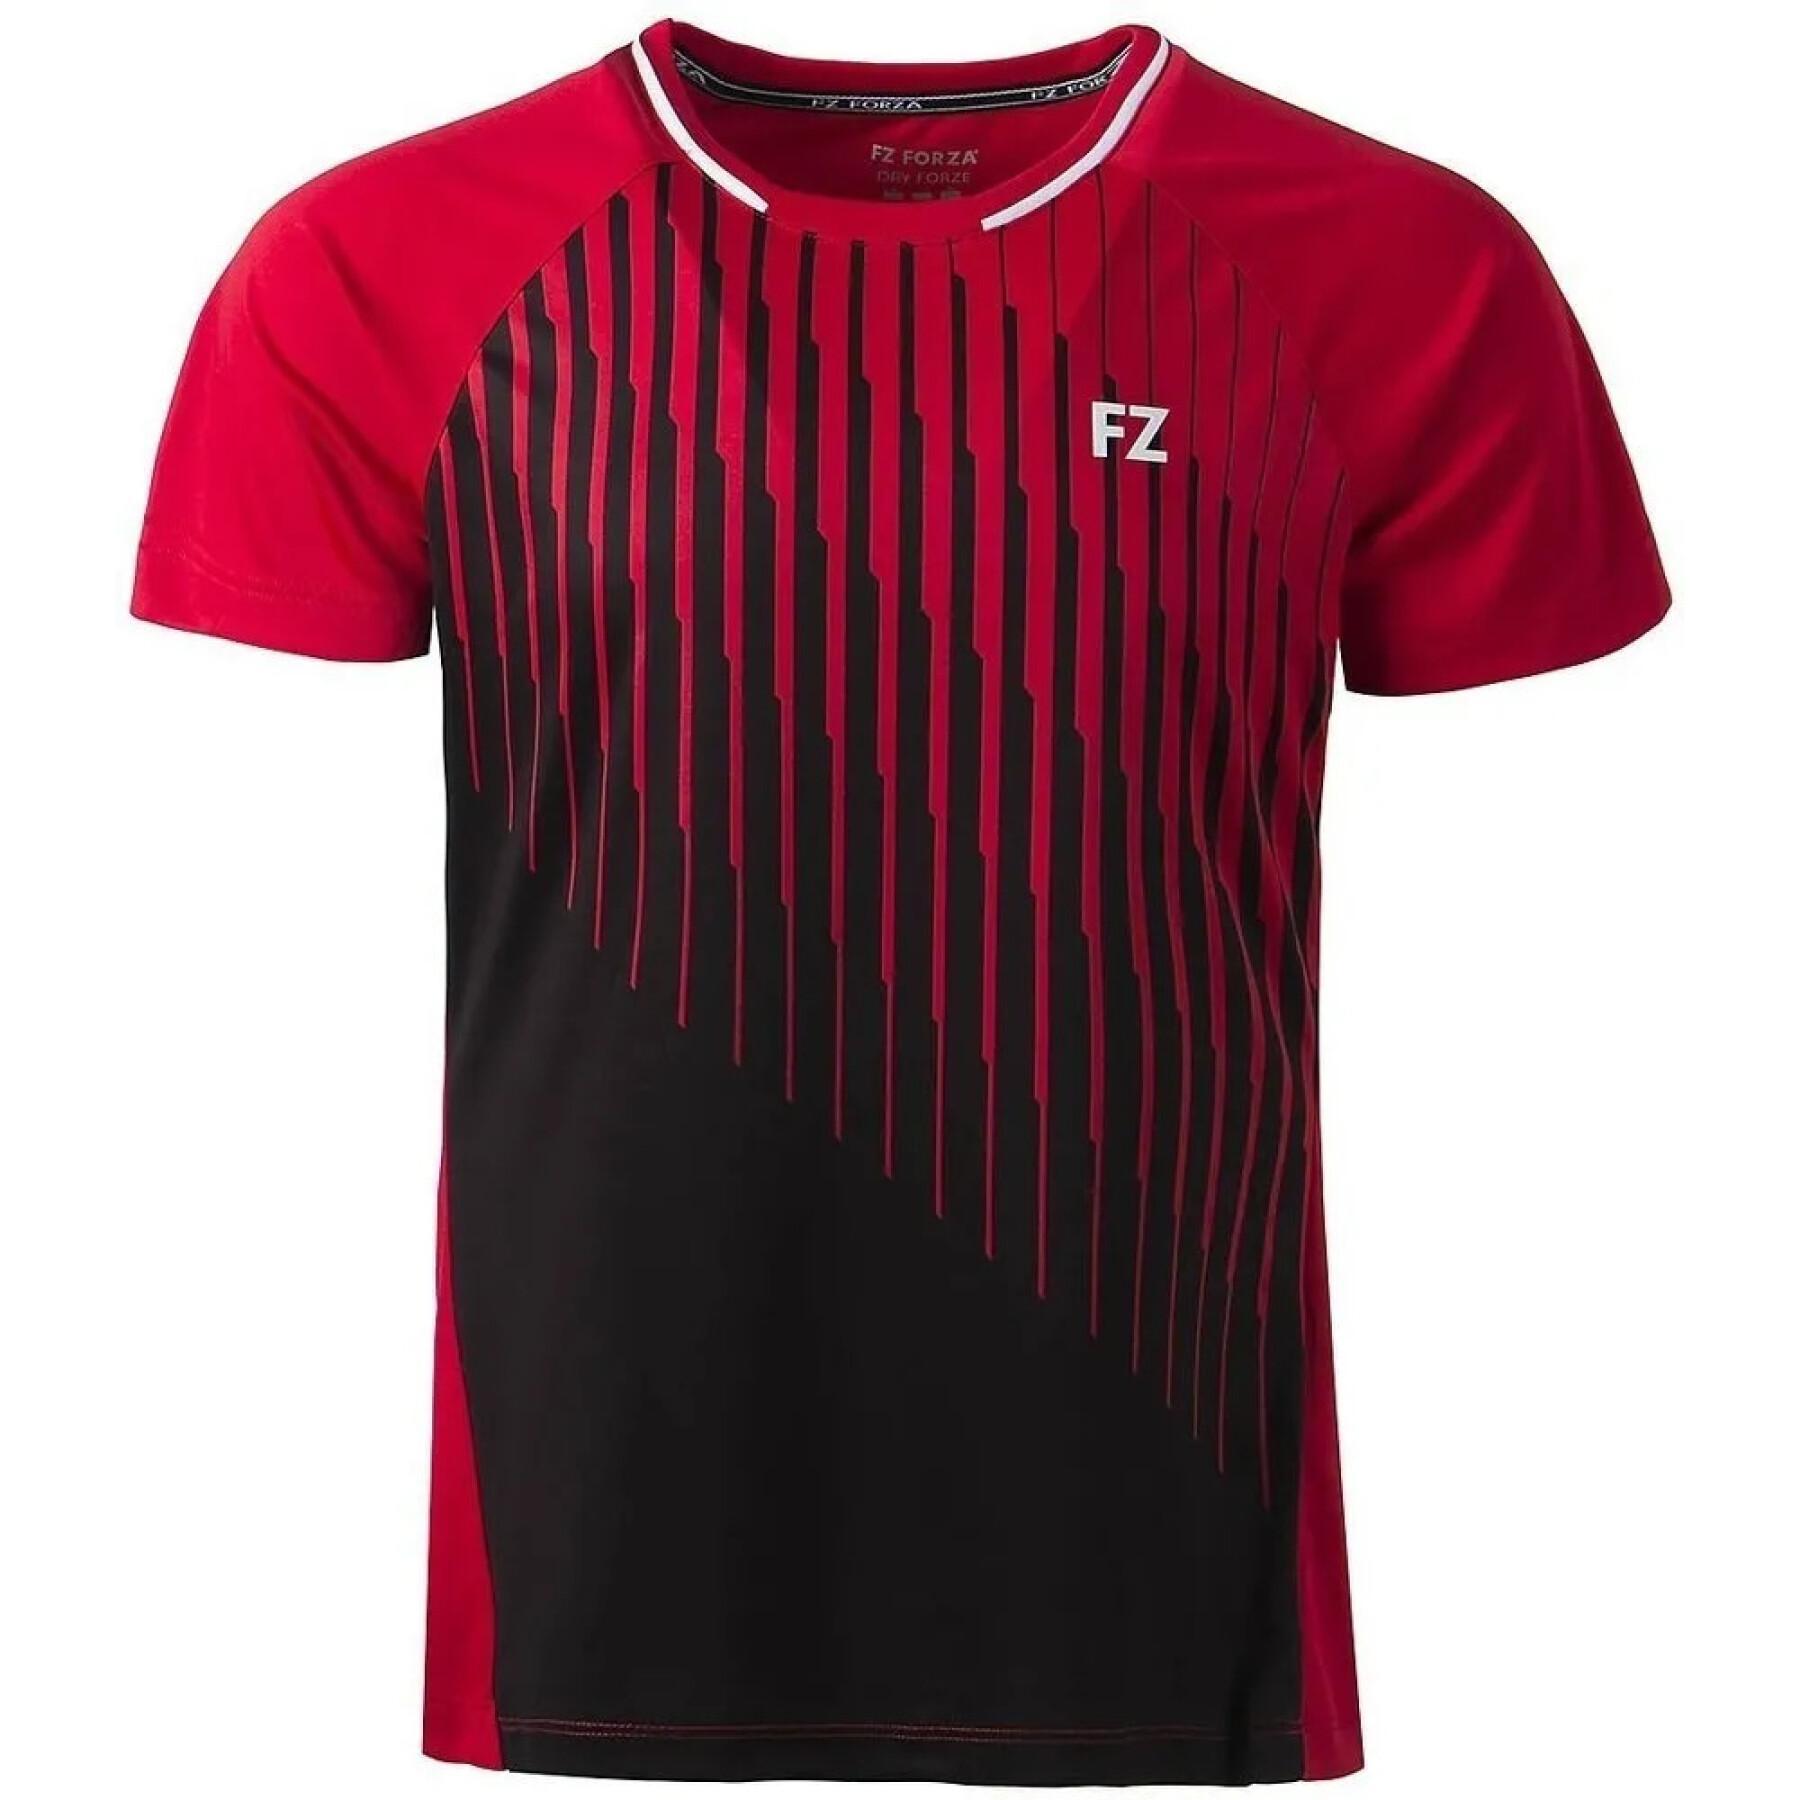 T-shirt man FZ Forza Sedano M S/S